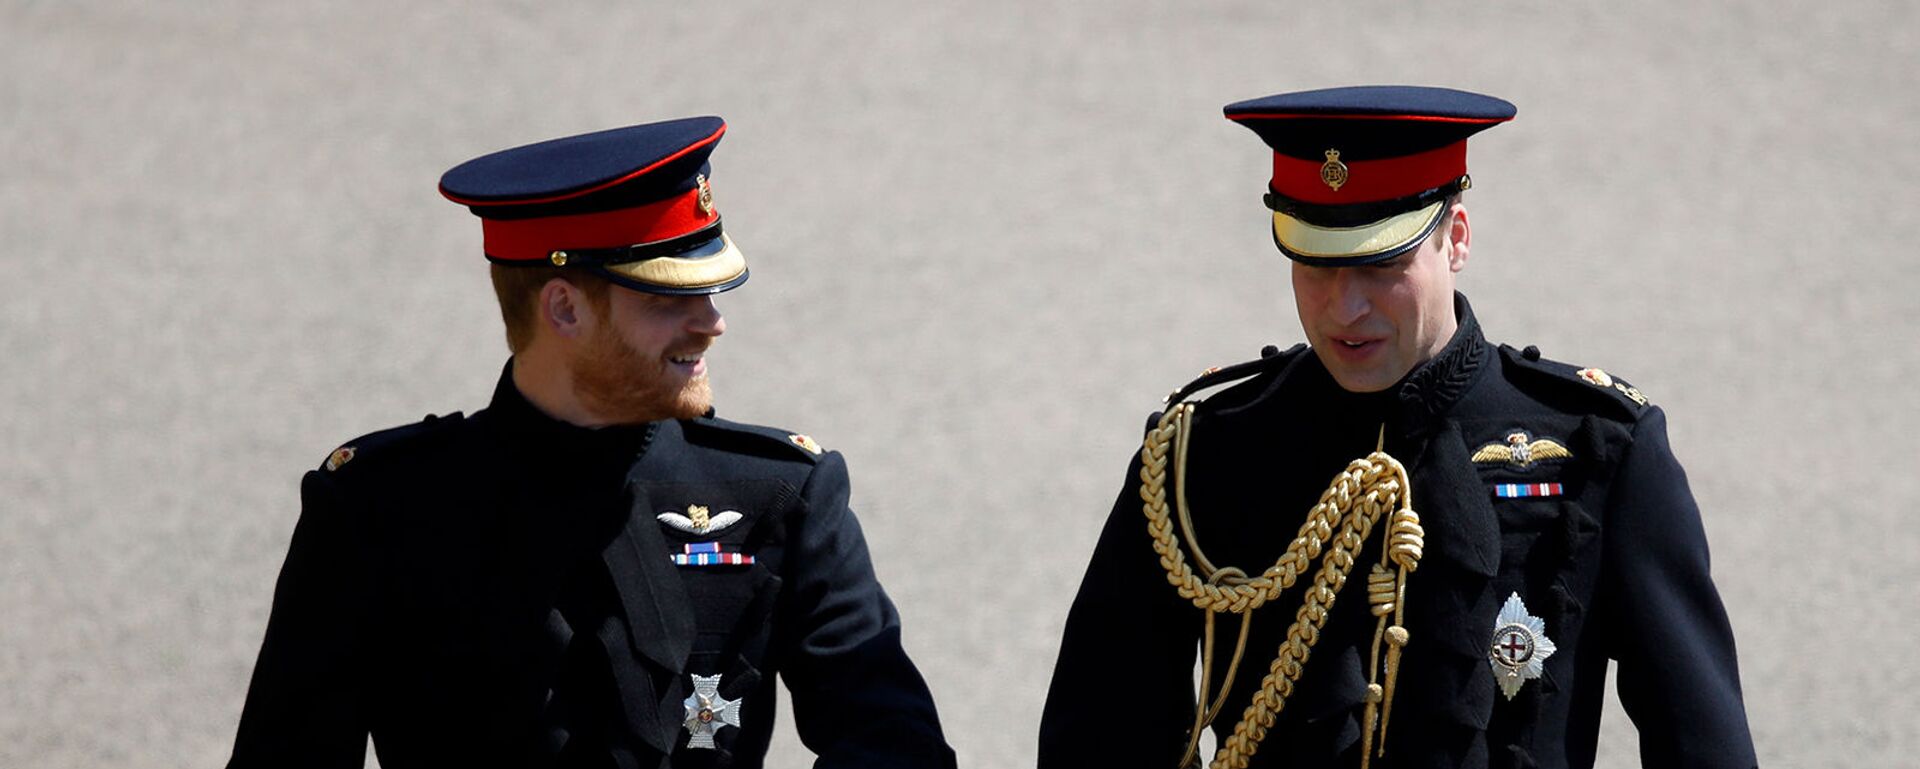 Британский принц Гарри и шафер принц Уильям прибывают на свадебную церемонию в часовню Святого Георгия в Виндзорском замке (19 мая 2018). Виндзор - Sputnik Արմենիա, 1920, 19.04.2021